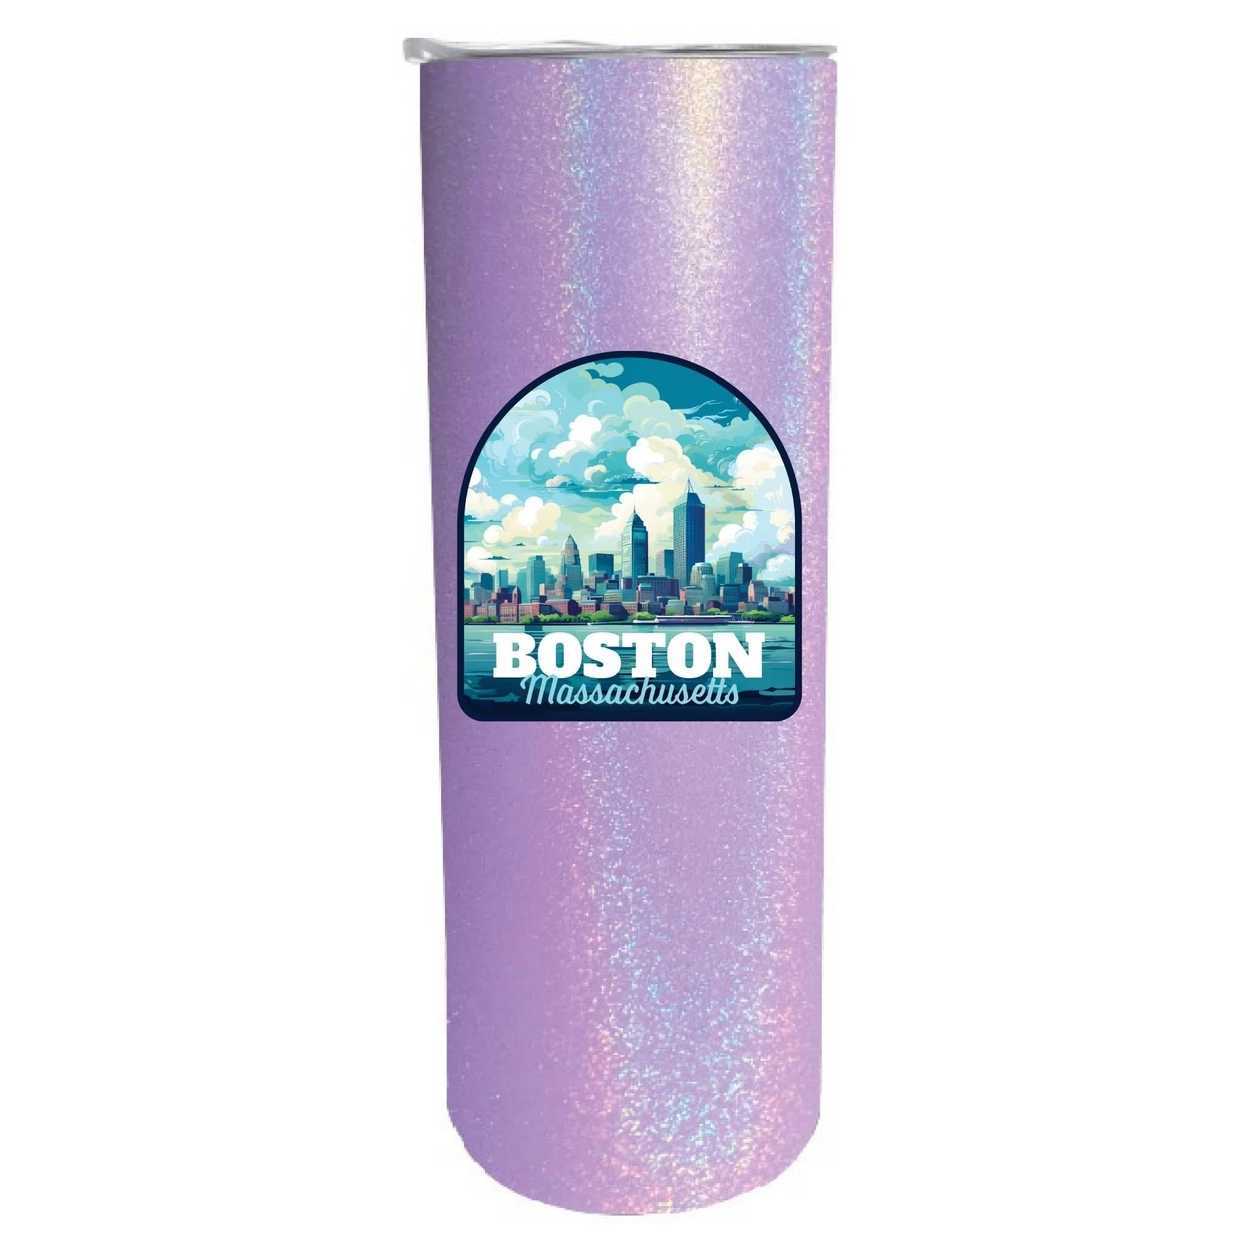 Boston Massachusetts A Souvenir 20 Oz Insulated Skinny Tumbler Glitter - Purple Glitter,,Single